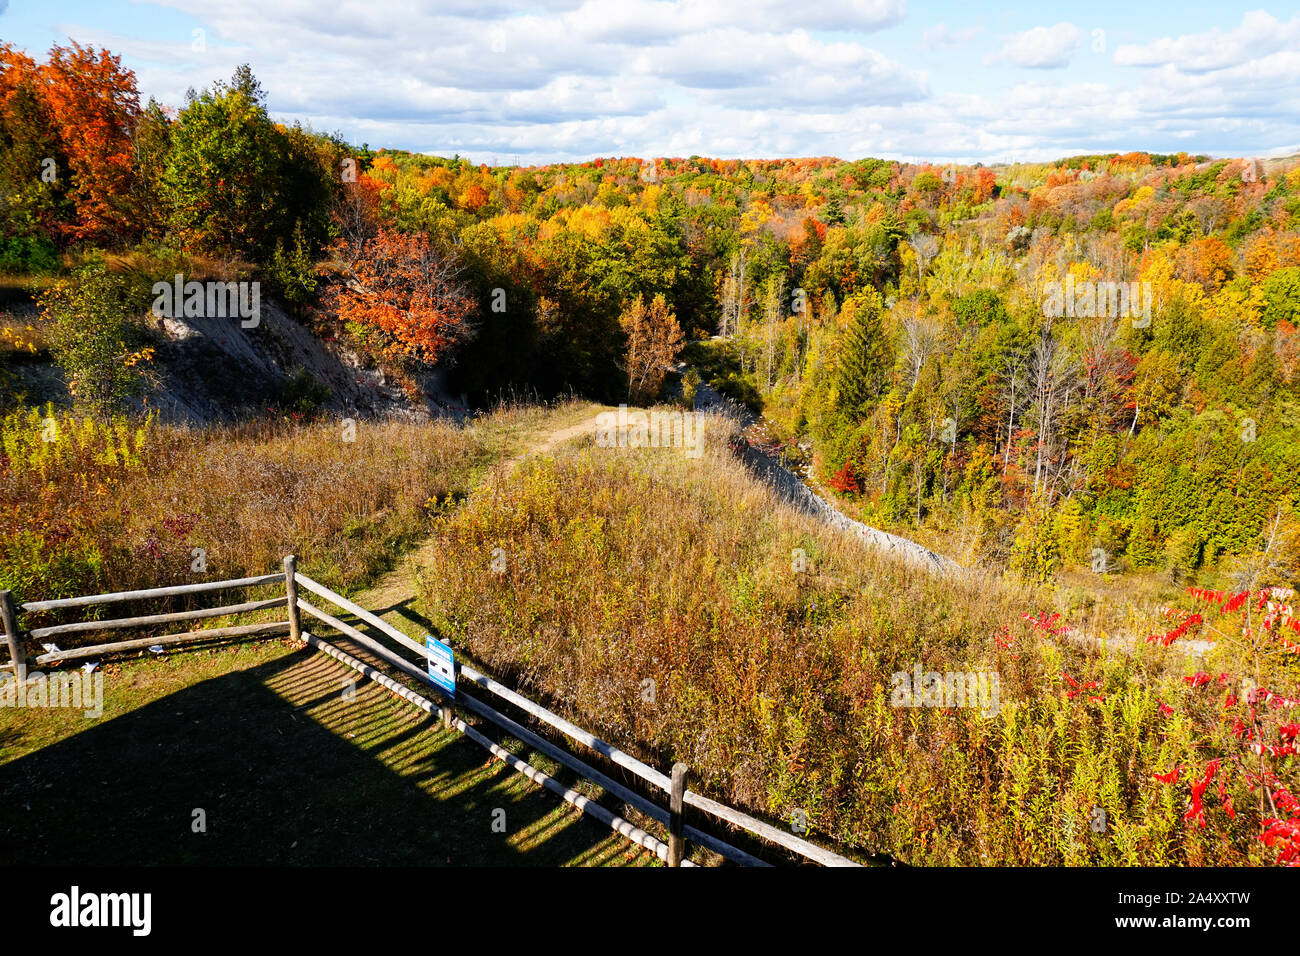 Mirador vista panorámica de brillantes colores de otoño en Rouge Parque nacional urbano, Toronto, Ontario, Canadá Foto de stock